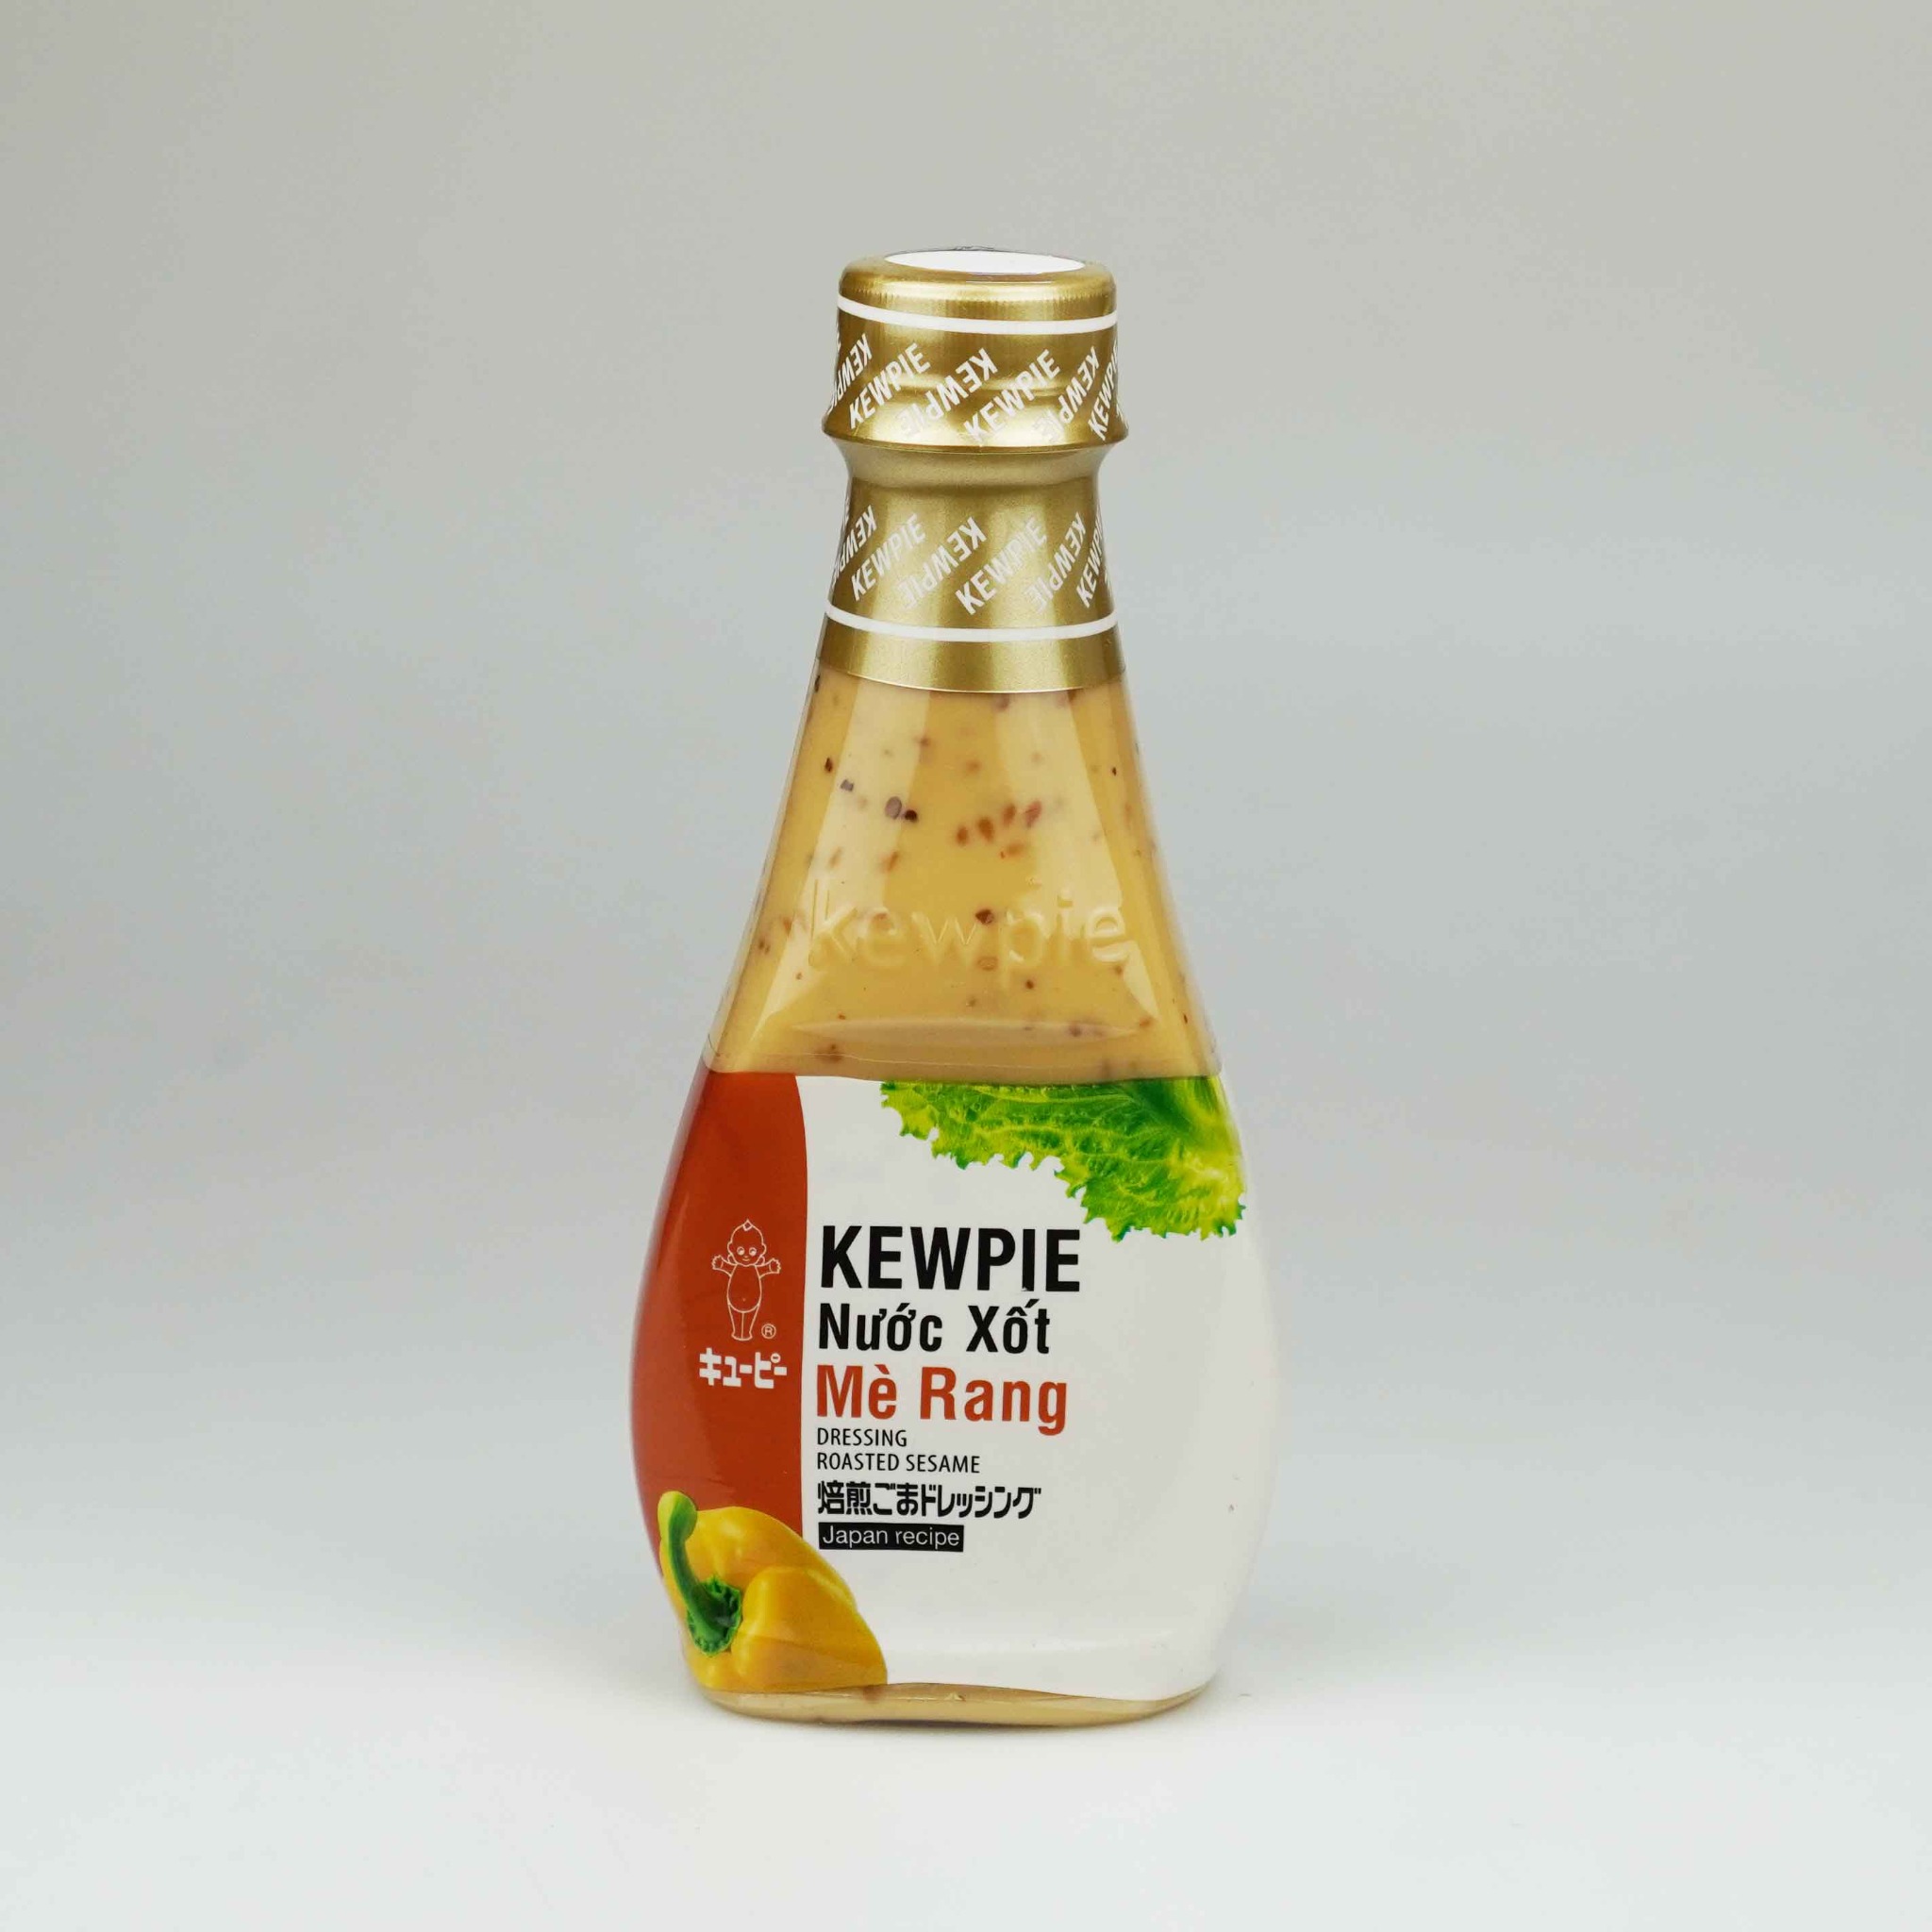 Nước xốt mè rang Kewpie chai 210ml